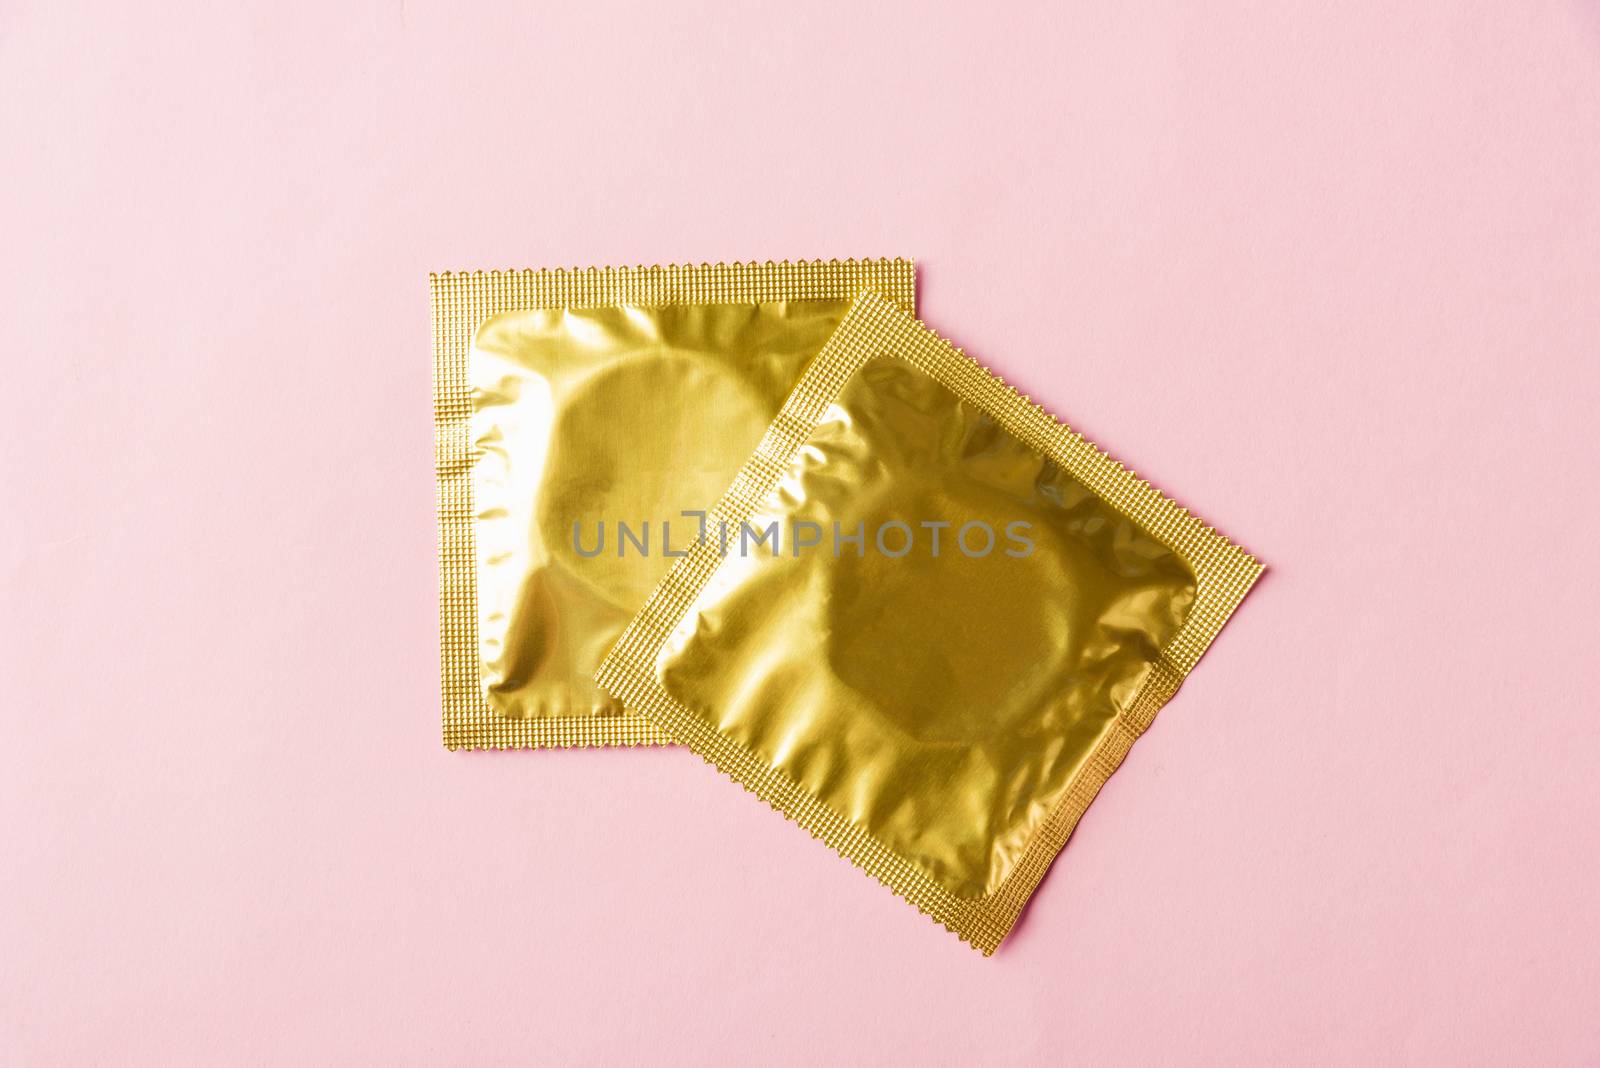 Condom in wrapper pack by Sorapop